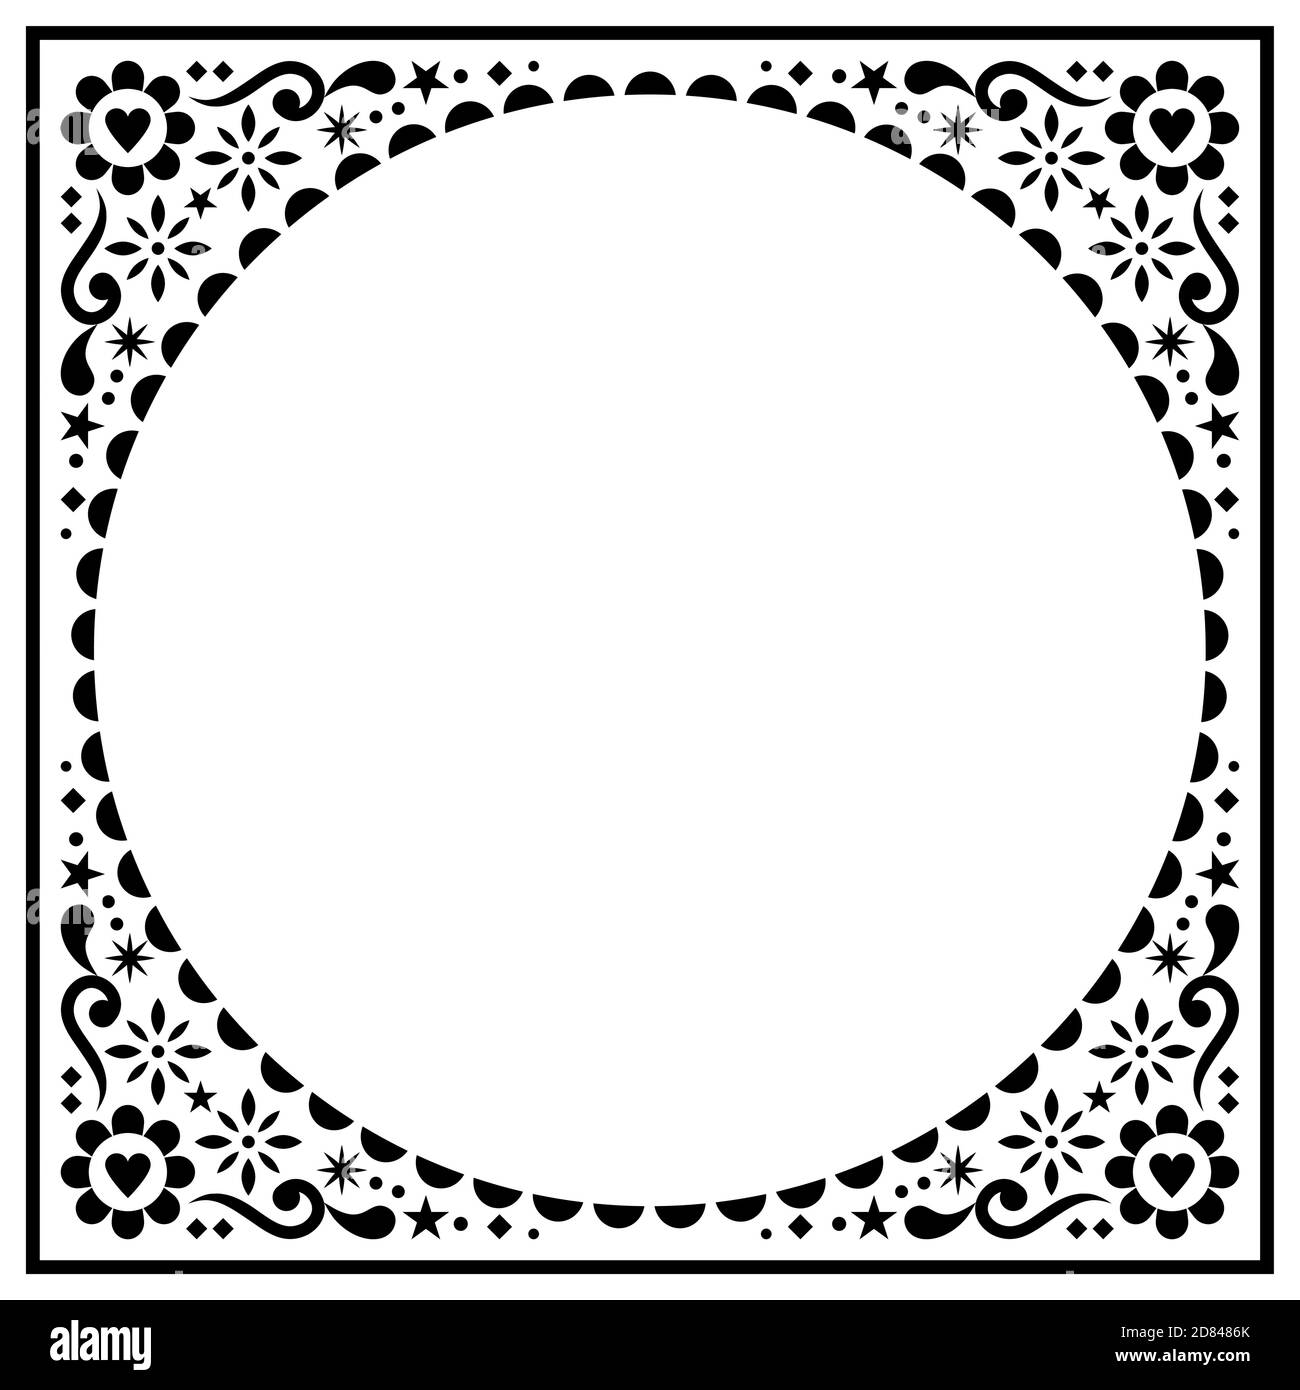 Biglietto d'auguri folcloristico scandinavo o disegno vettoriale di invito al matrimonio, motivo etnico floreale in nero su bianco Illustrazione Vettoriale